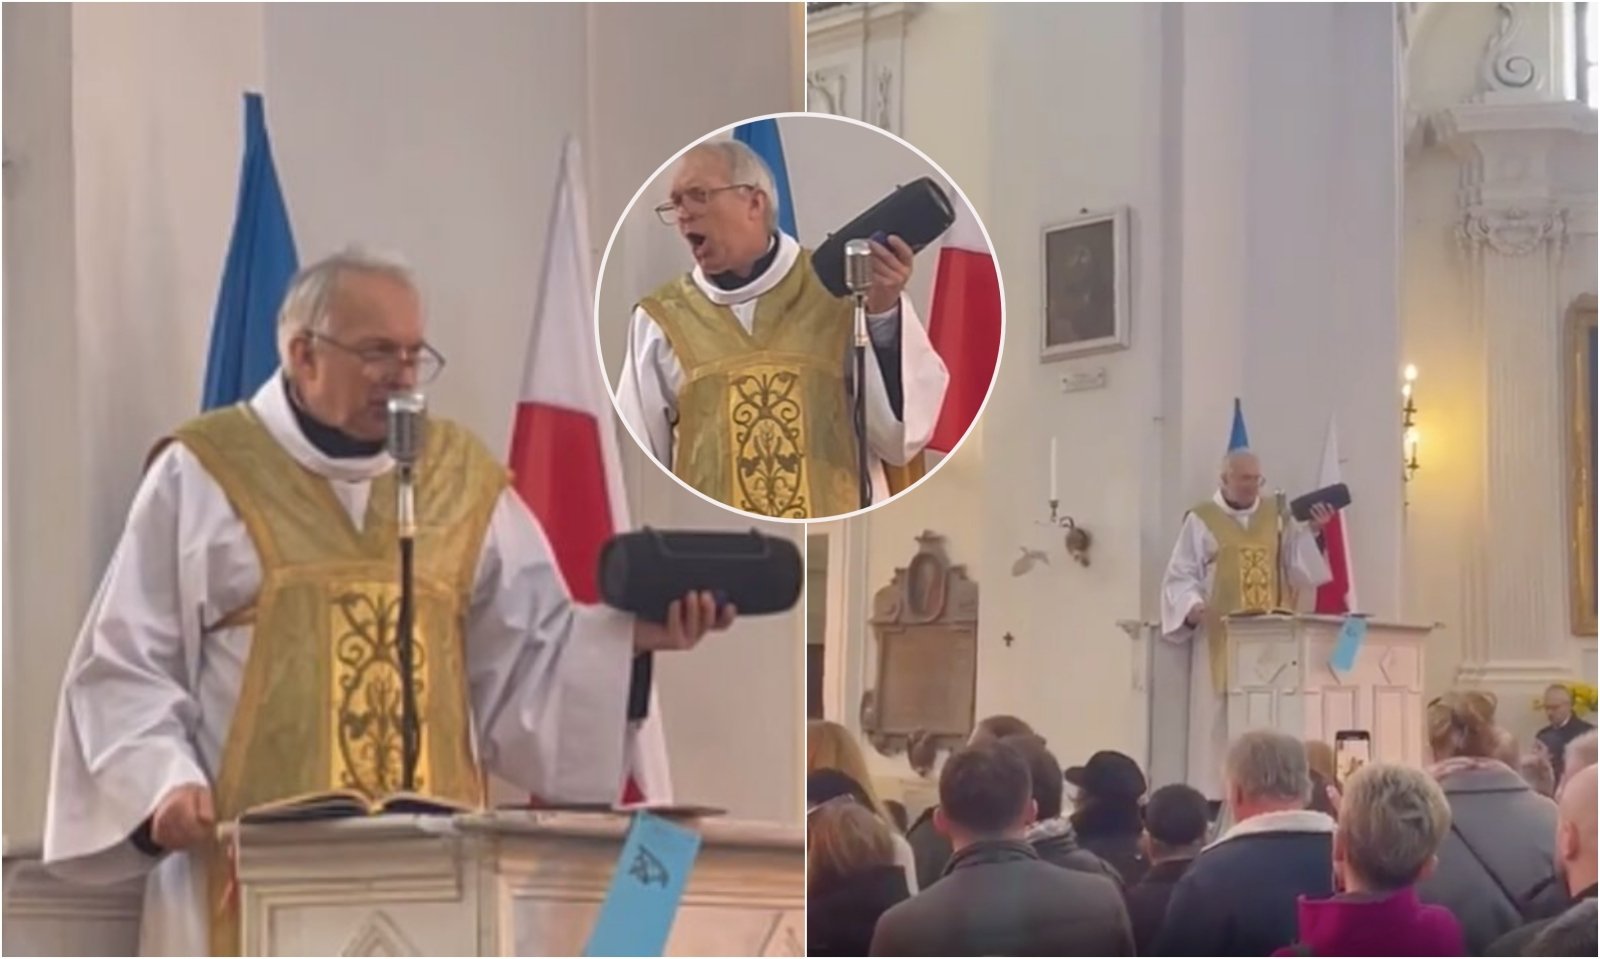 Akt podczas mszy w Polsce zaskakuje miliony ludzi: ksiądz z głośnikiem w dłoniach wywołuje sensację w Internecie